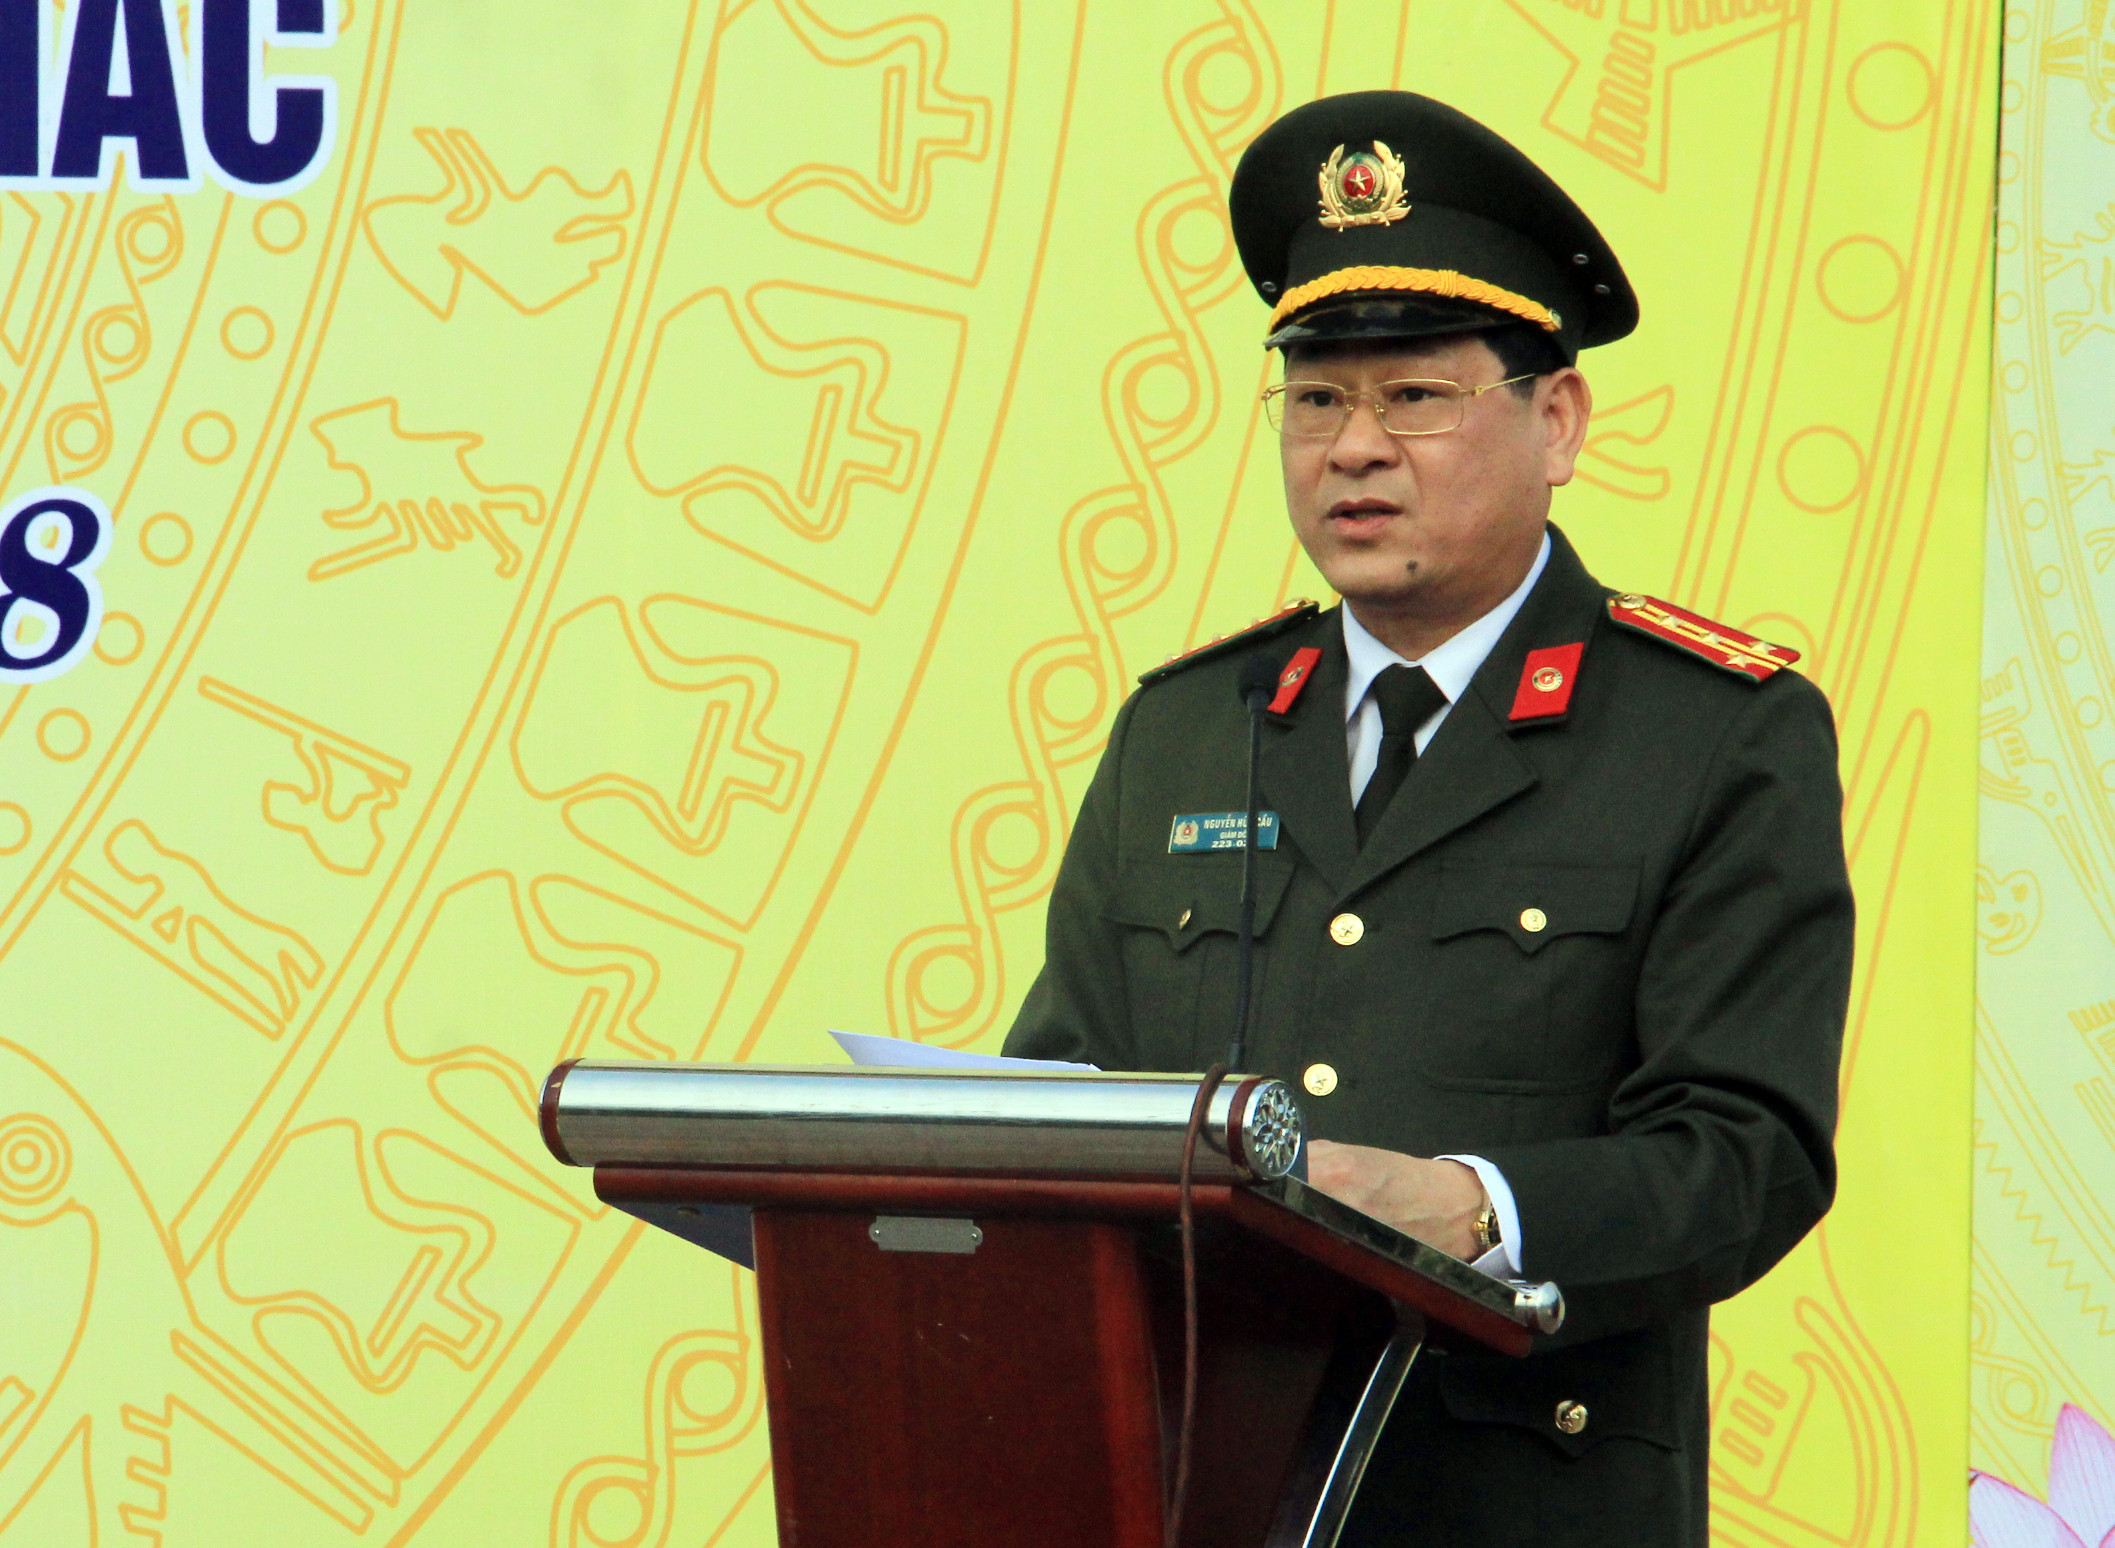 Đại tá Nguyễn Hữu Cầu – Giám đốc Công an tỉnh Nghệ An yêu cầu, về nguyên tắc phương châm thực hiện kế hoạch là kiên quyết, ngăn chặn, bắt giữ, xử lý có hiệu quả các loại tội phạm, vi phạm pháp luật, đảm bảo tính nghiêm minh của pháp luật